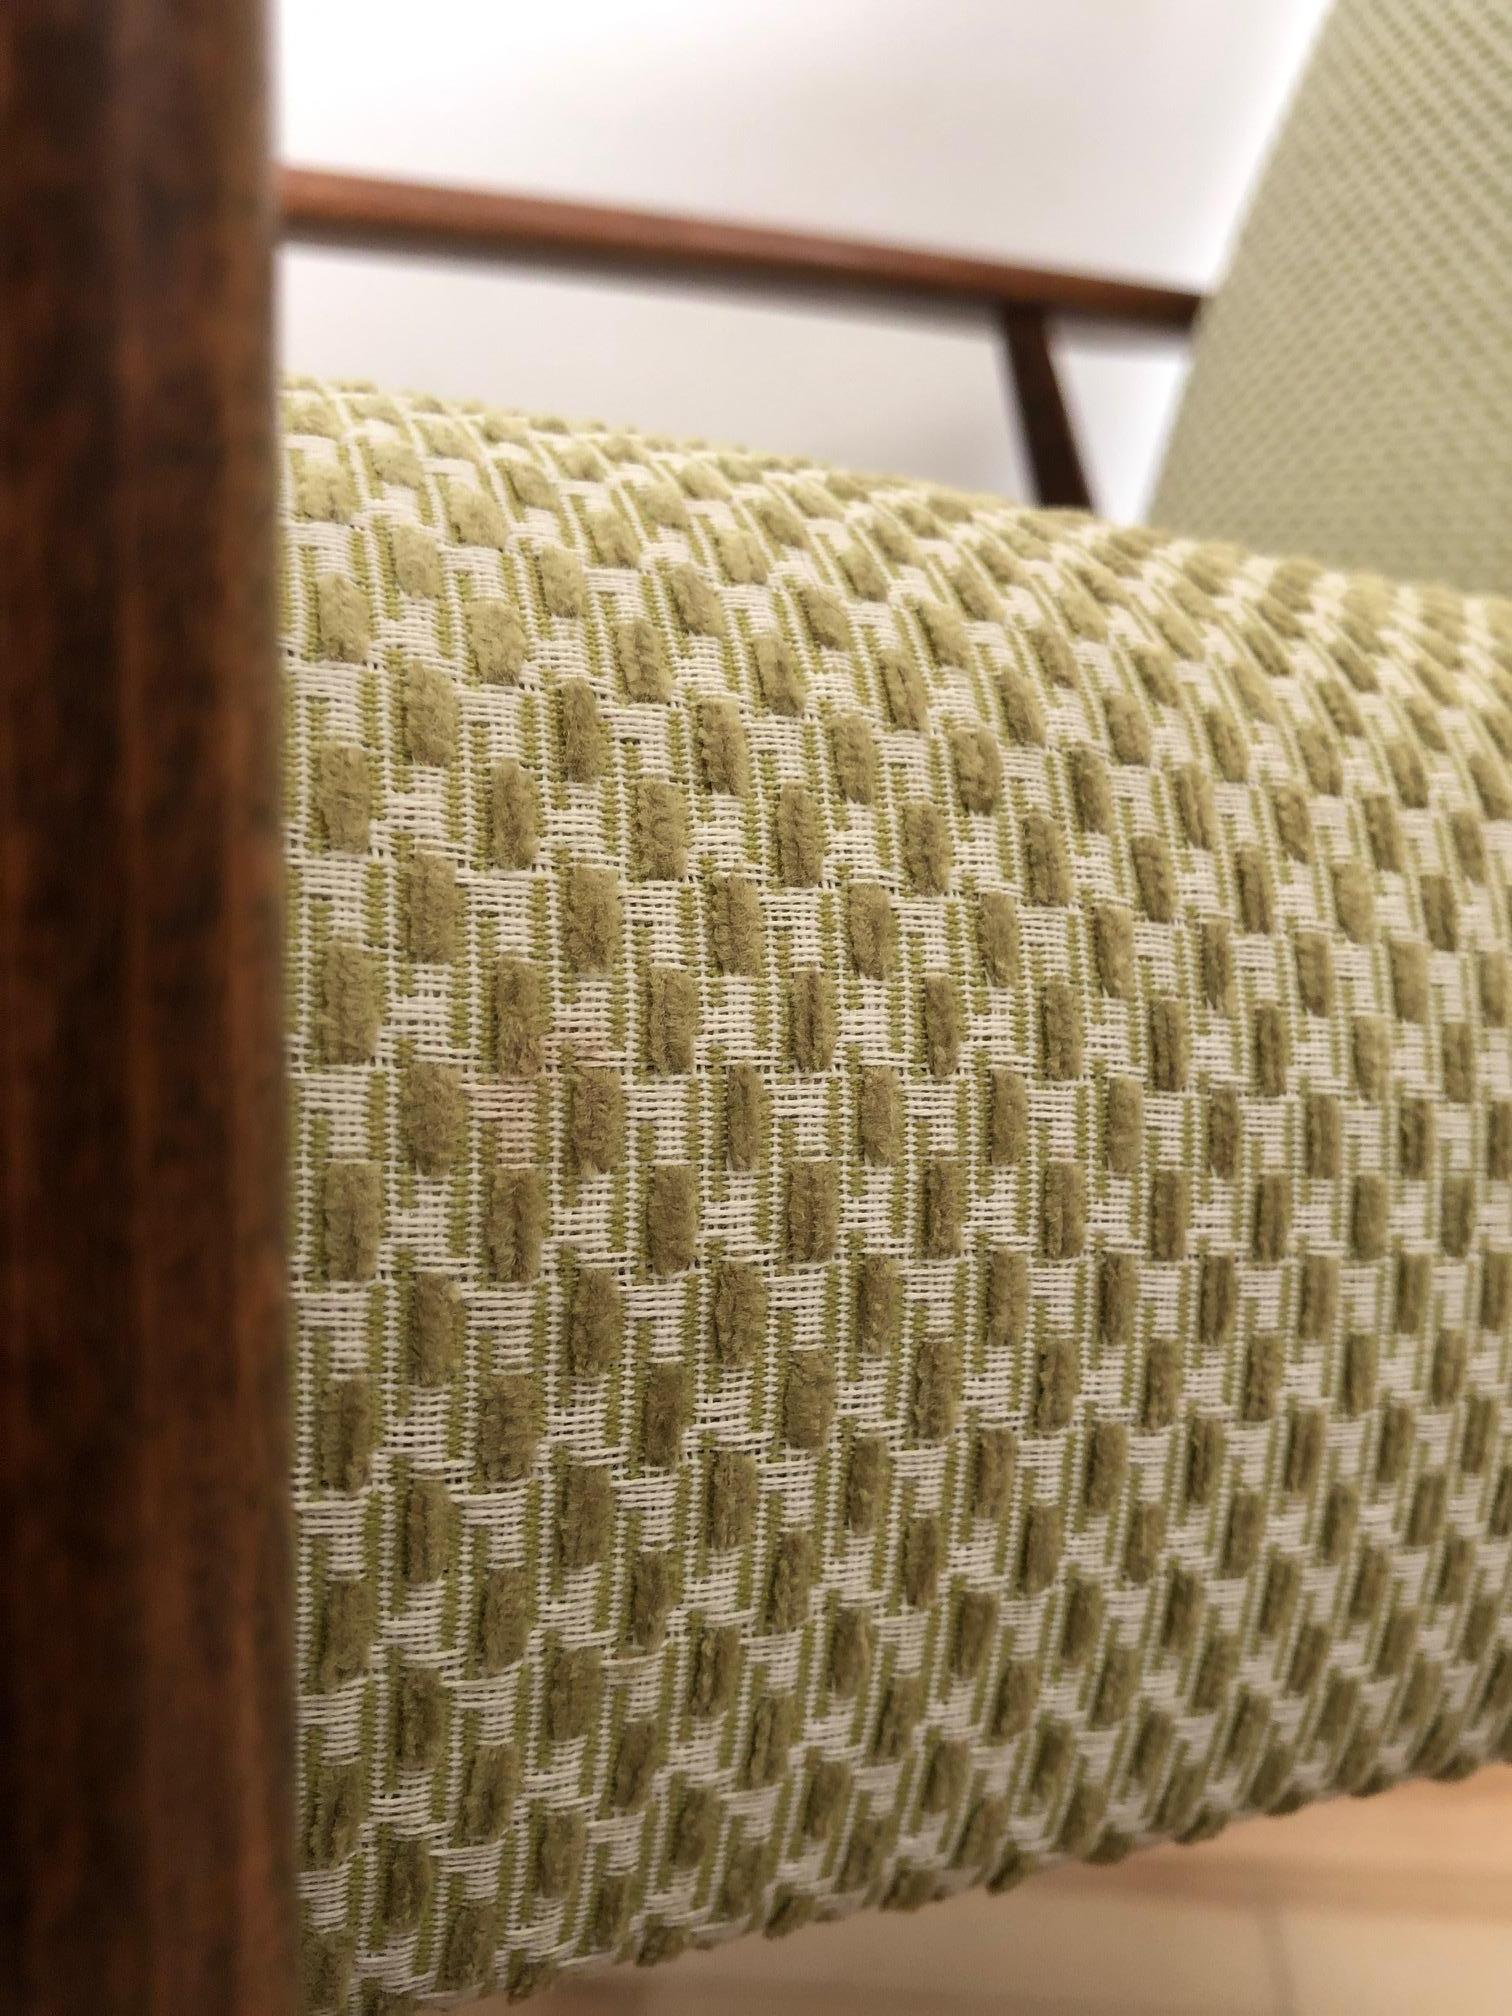 Le fauteuil conçu par Henryk Lis. La structure est en bois de hêtre recouvert d'un vernis satiné semi-mat. La tapisserie d'ameublement est un tissu italien lourd de couleur olive. L'ensemble a été entièrement restauré - à la fois le bois et la